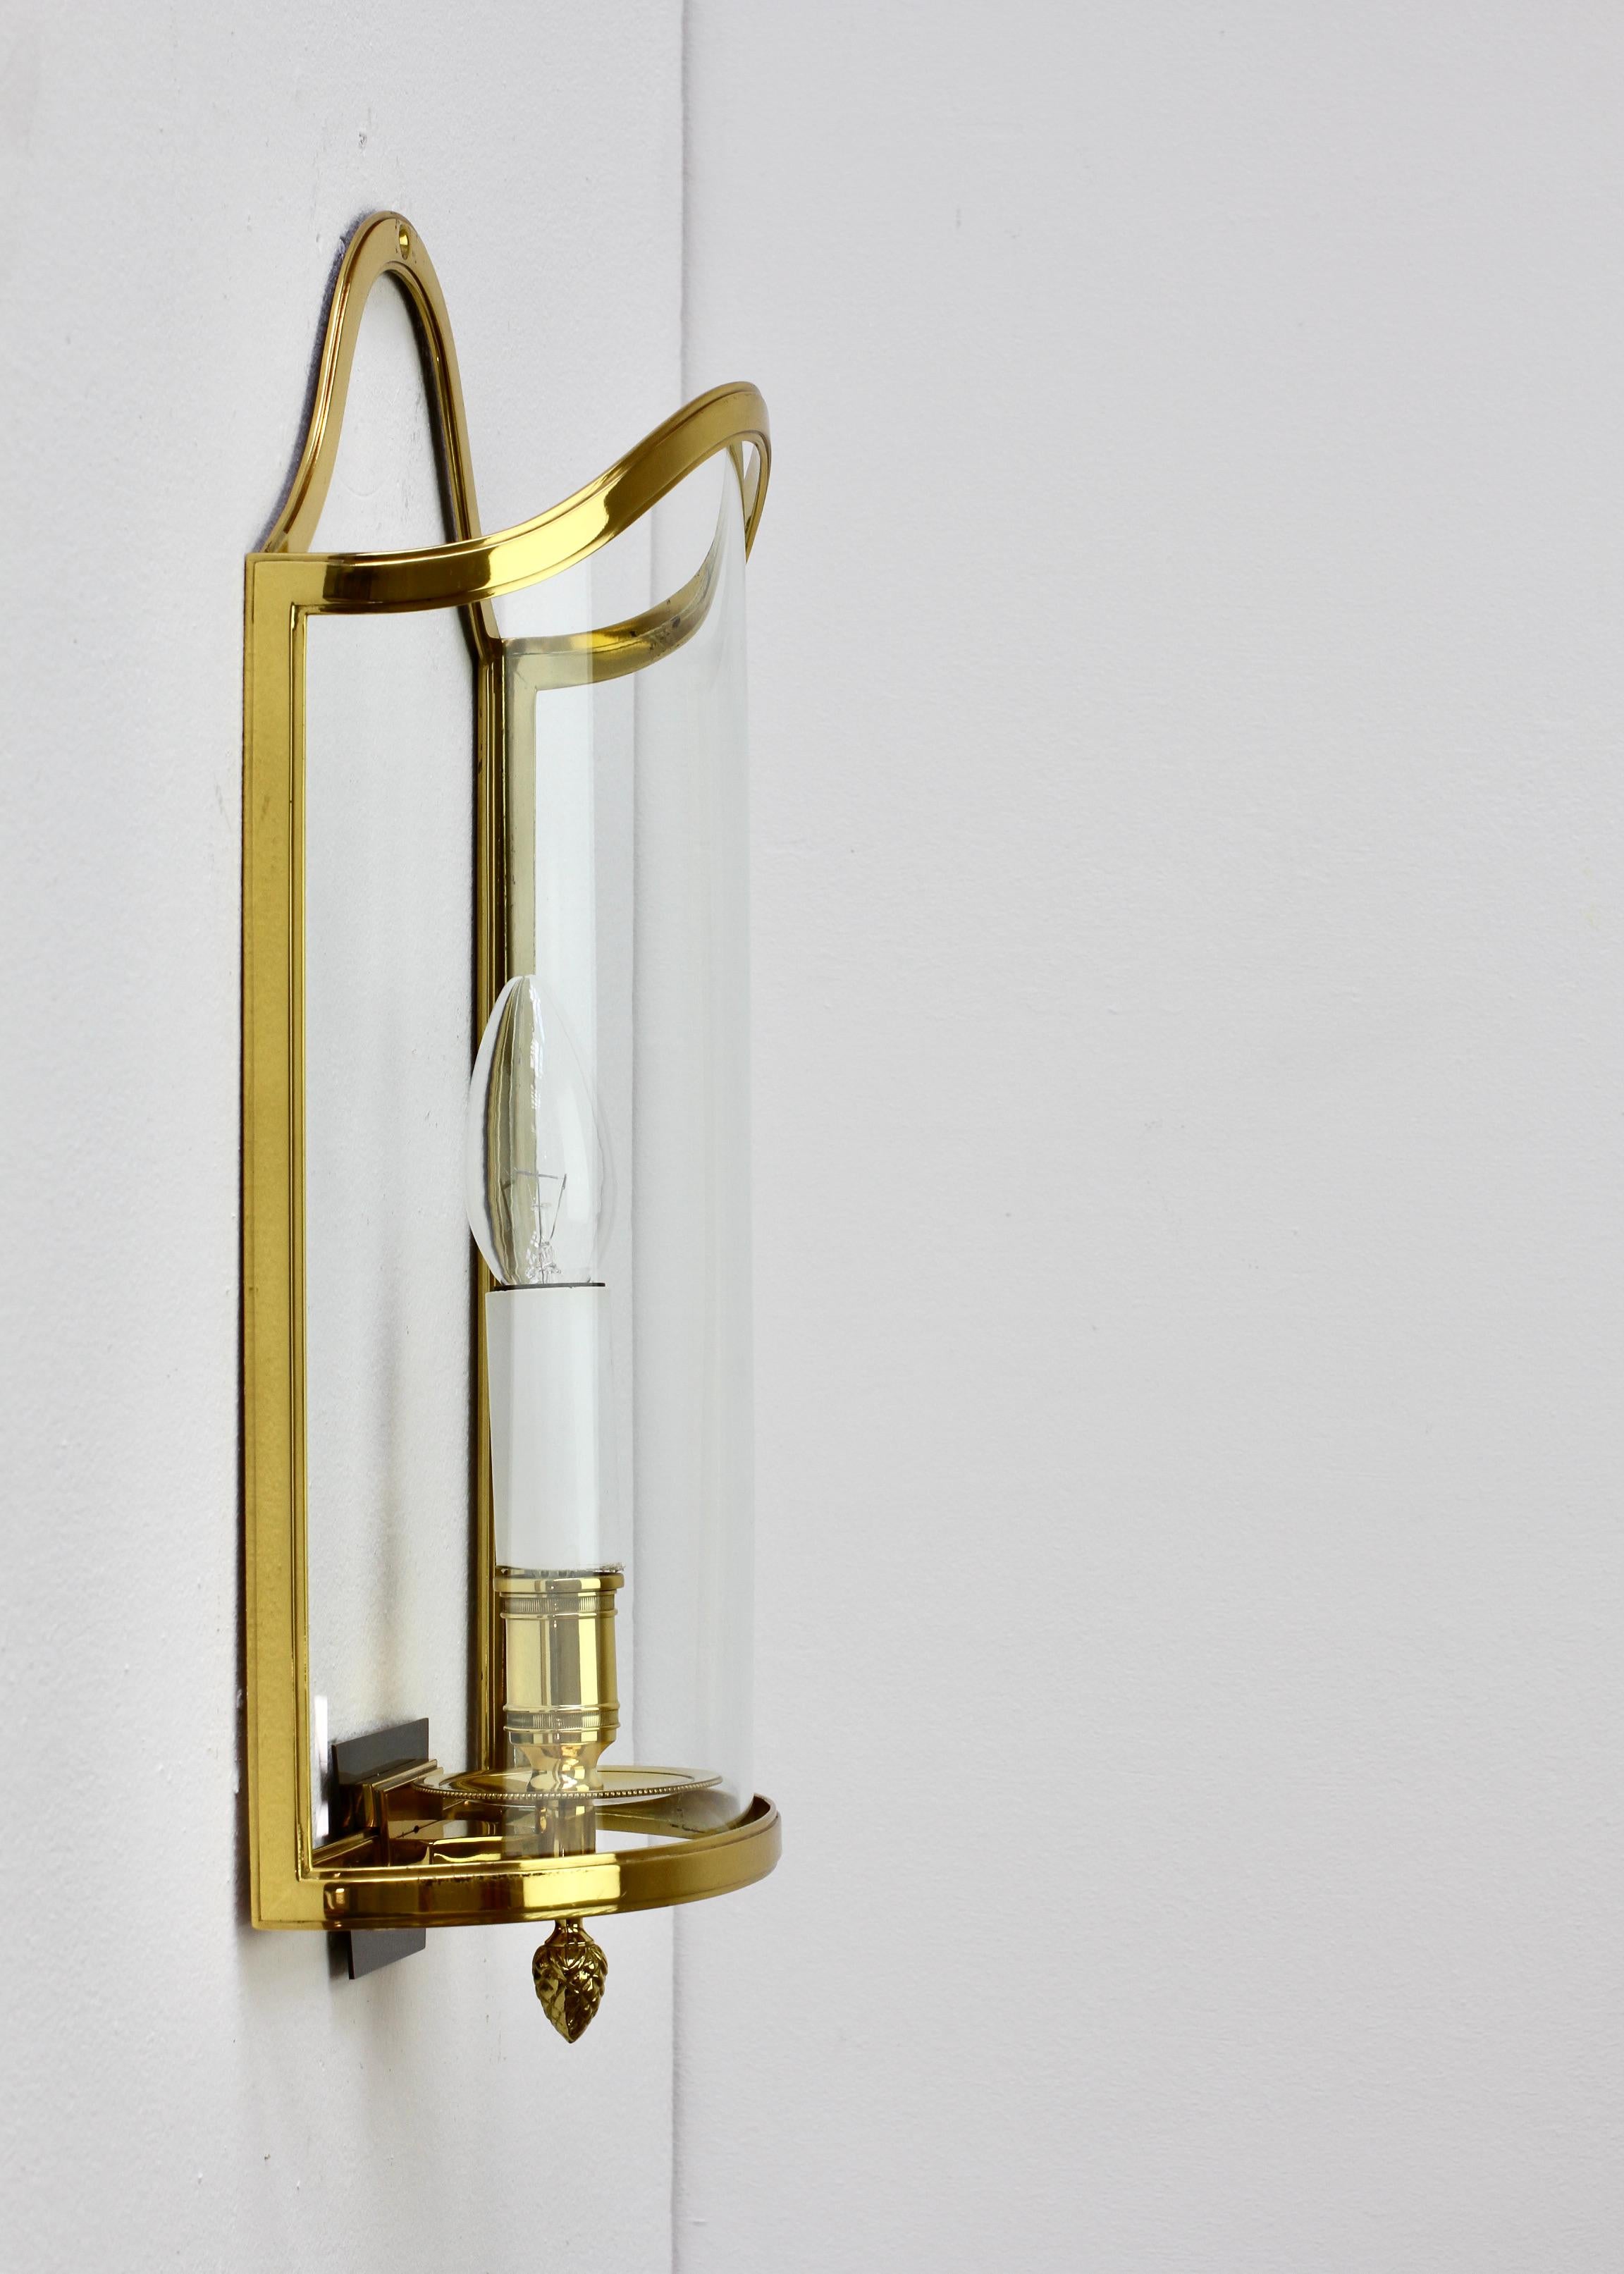 Pair of Maison Jansen Style Polished Brass Sconces by Vereinigte Werkstätten For Sale 1